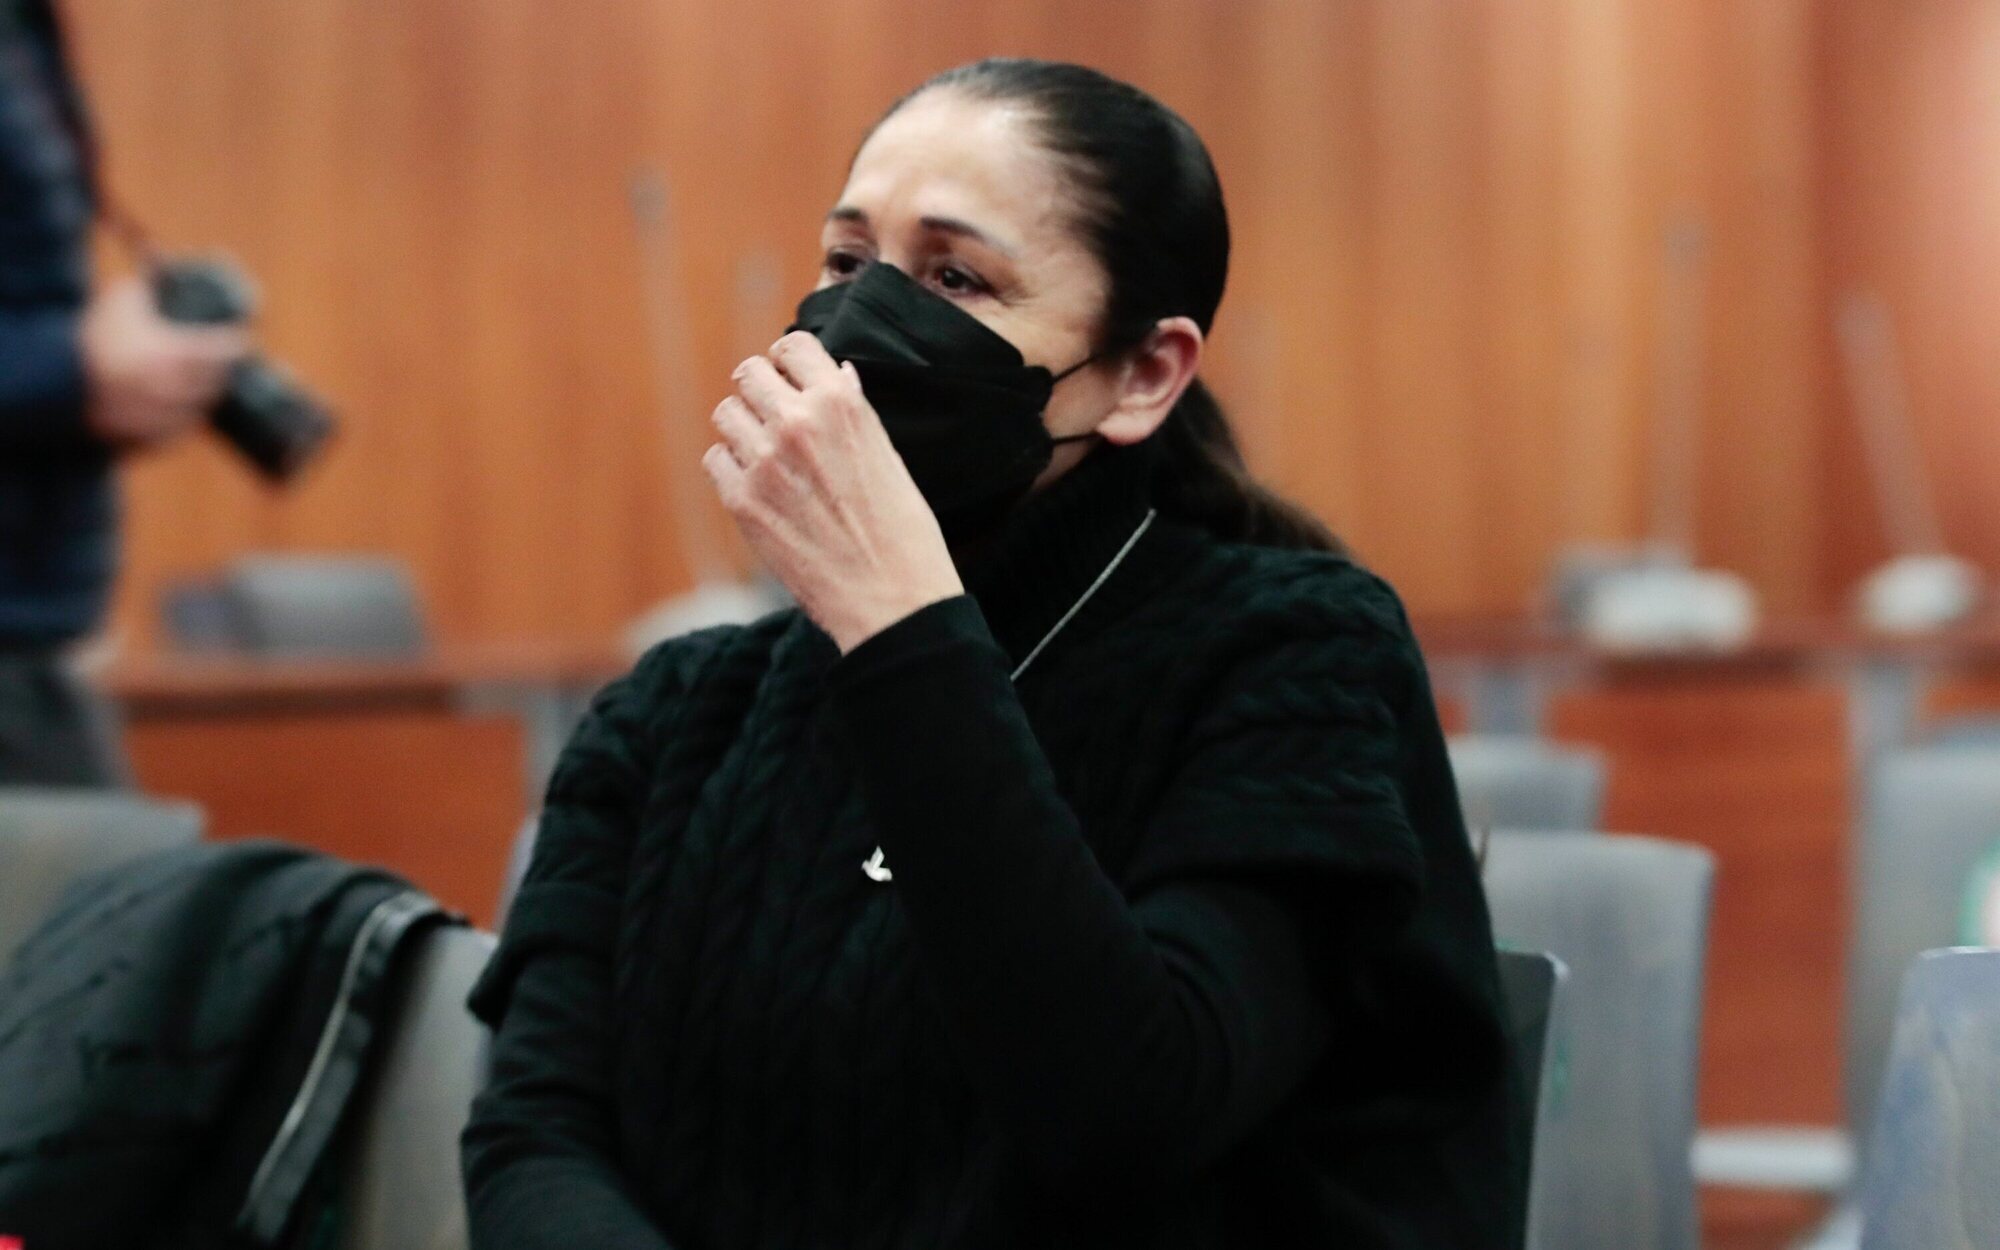 El juicio contra Isabel Pantoja se retrasa por un error, tras su dramático inicio plagado de lágrimas